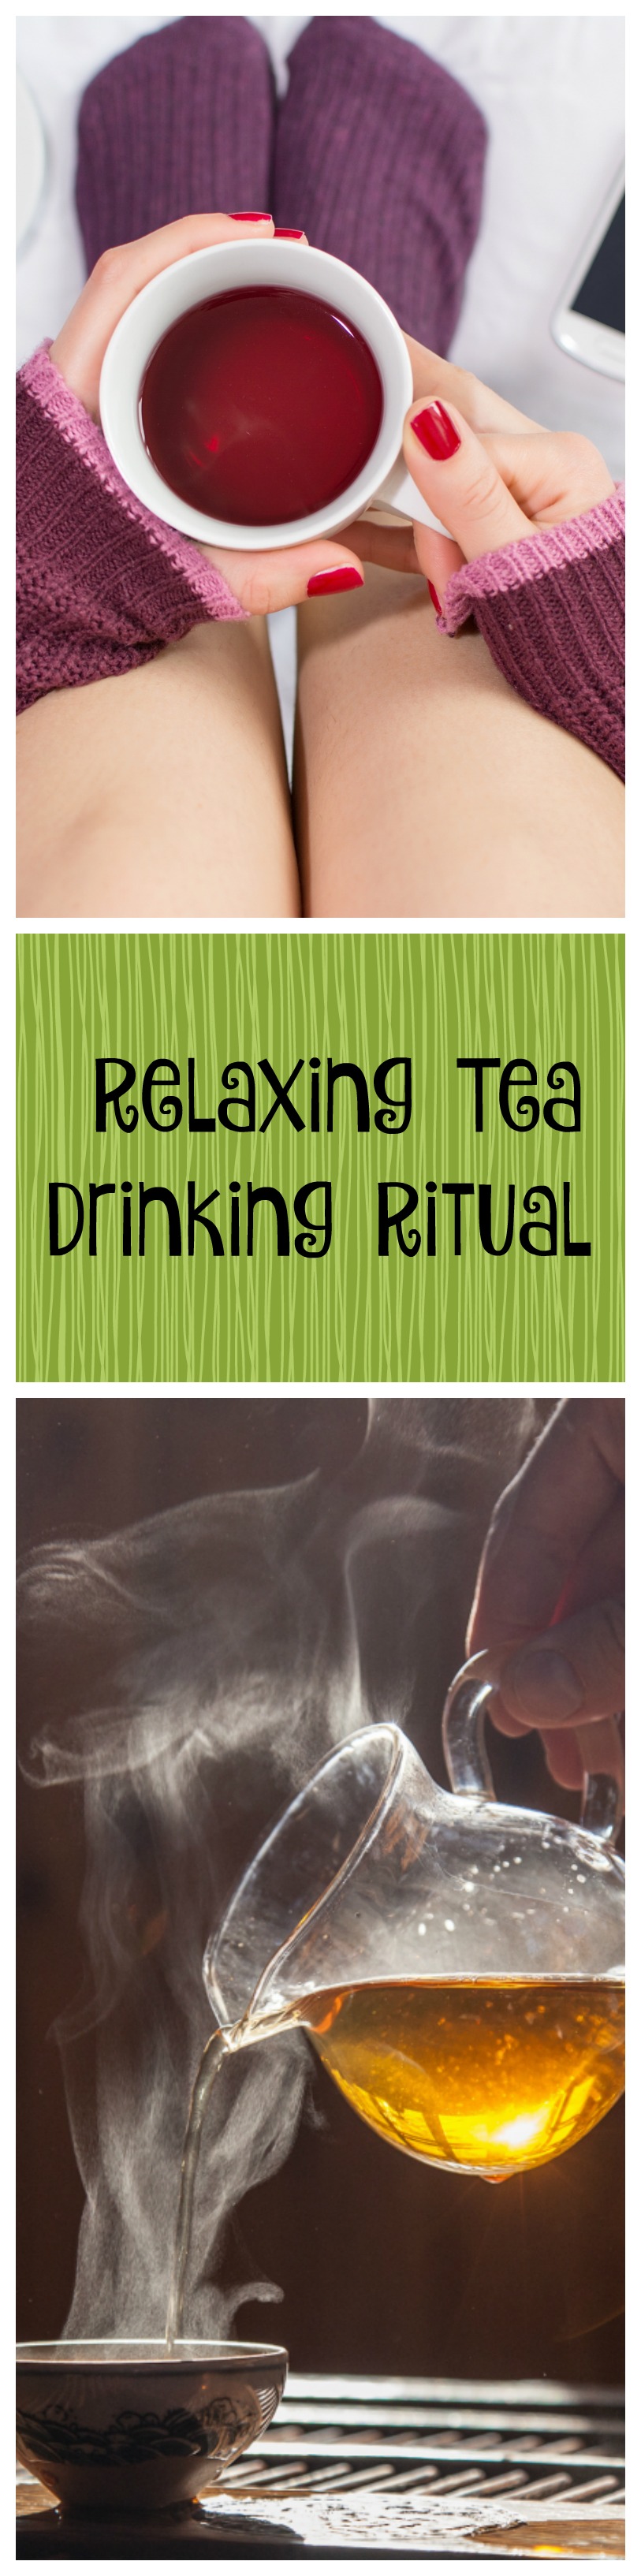 relaxing tea drinking ritual